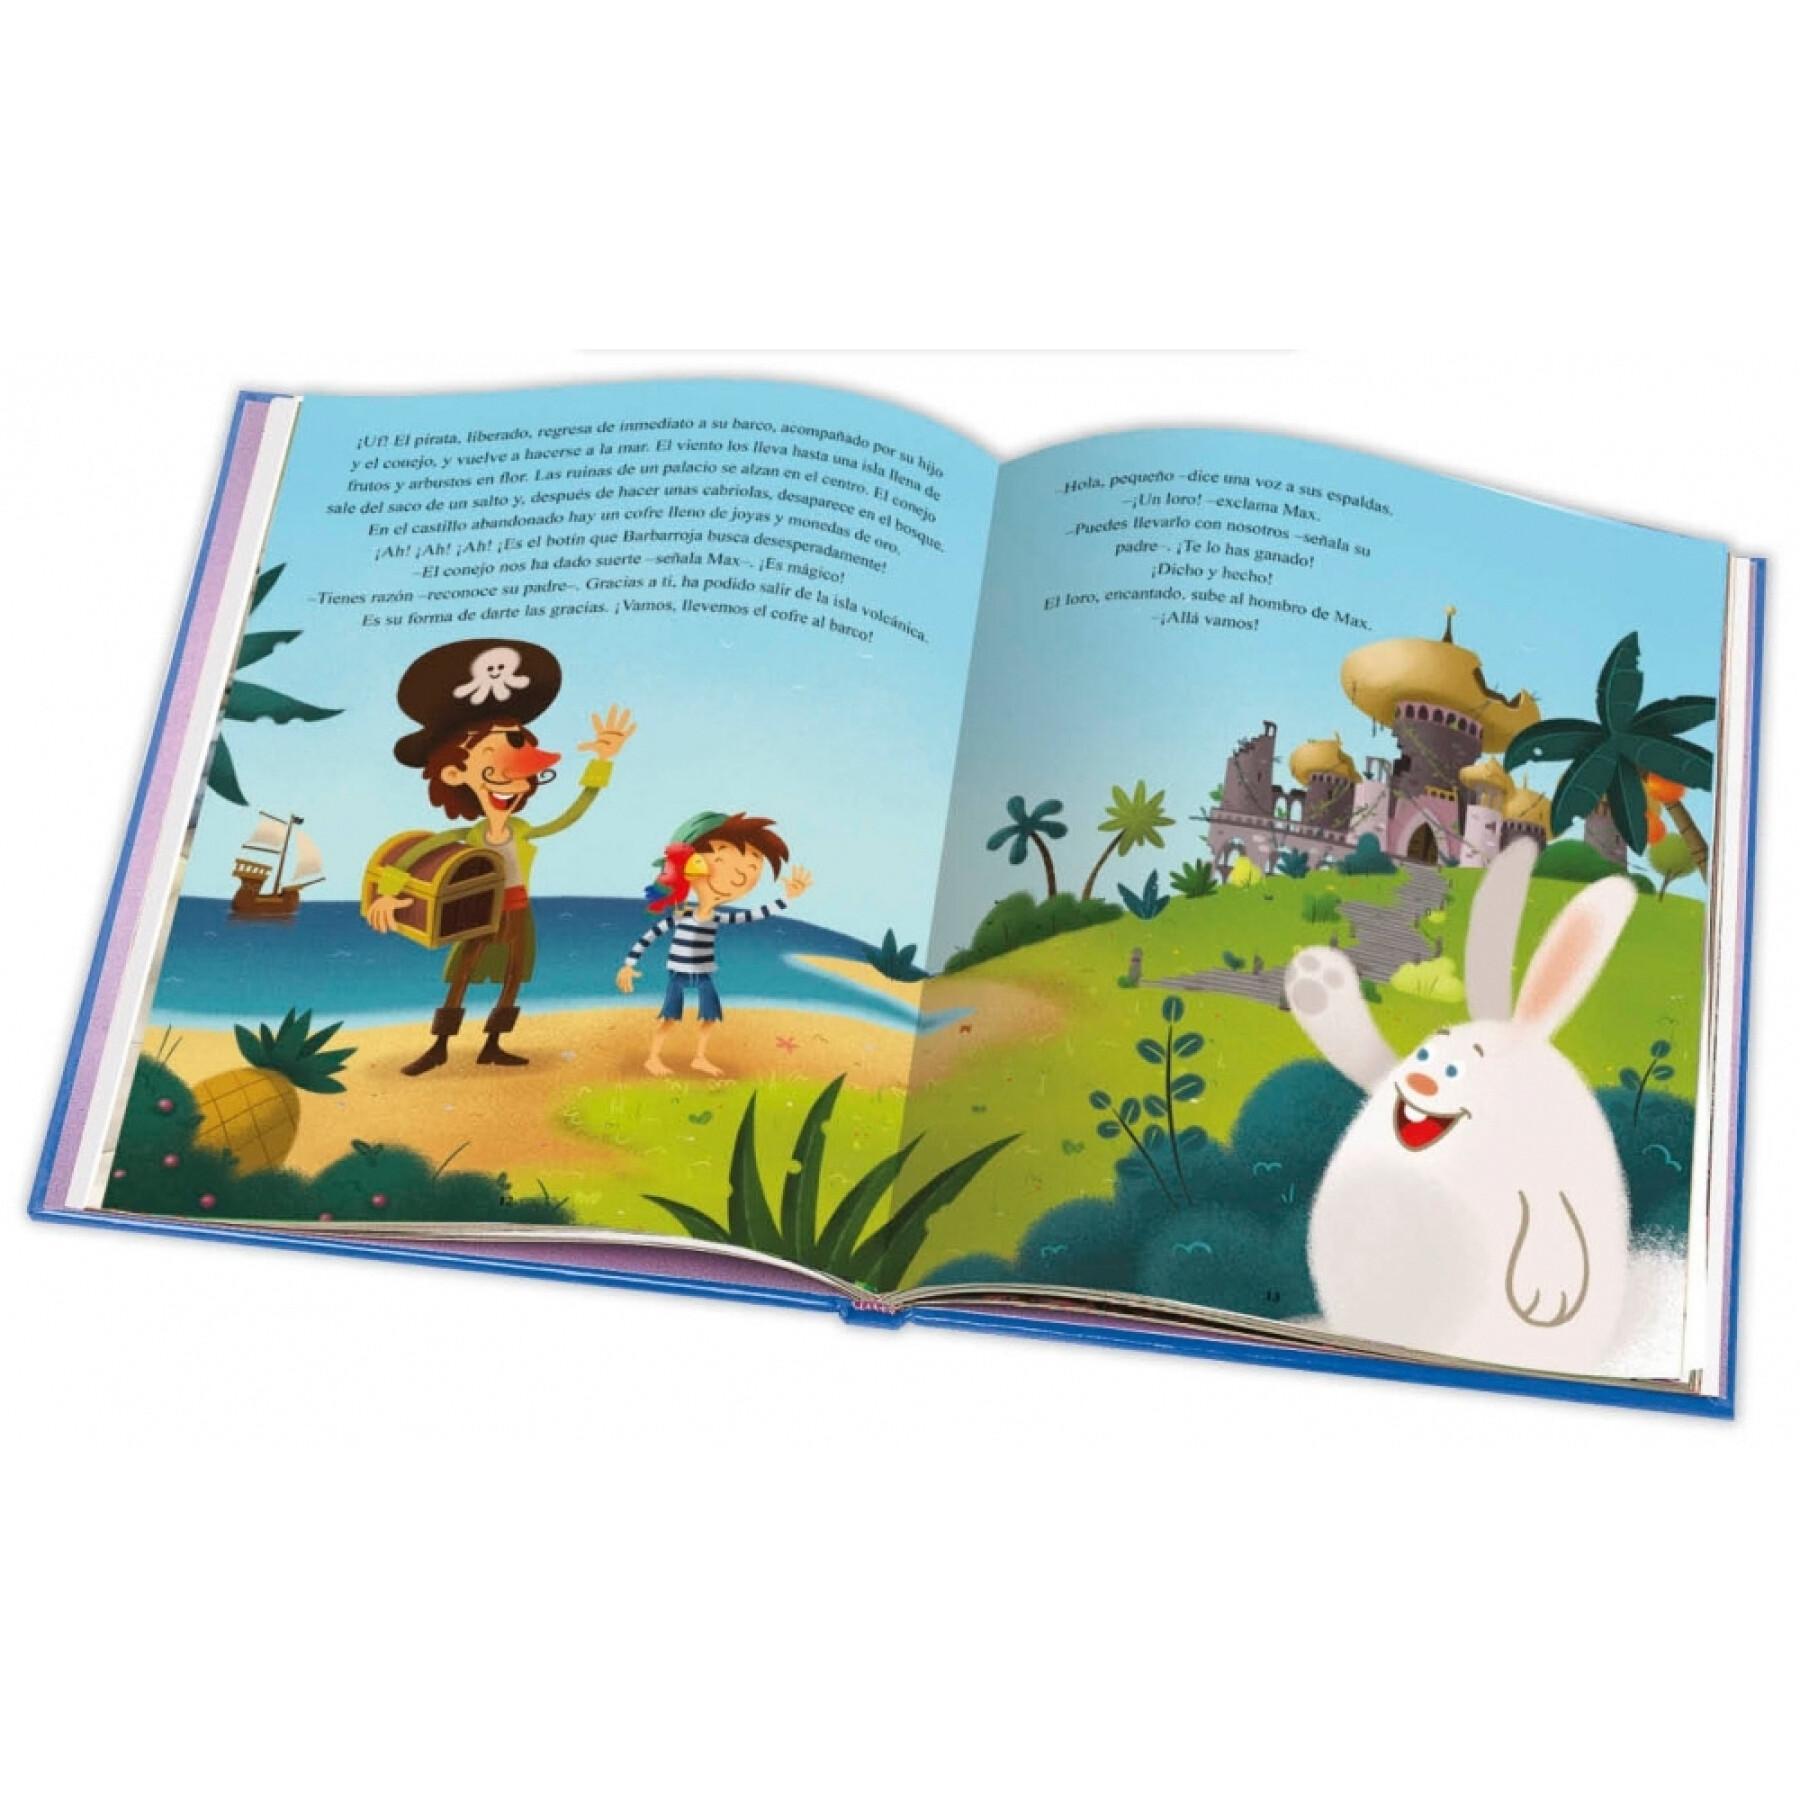 Storybook 120 stron opowieści z pirates Ediciones Saldaña